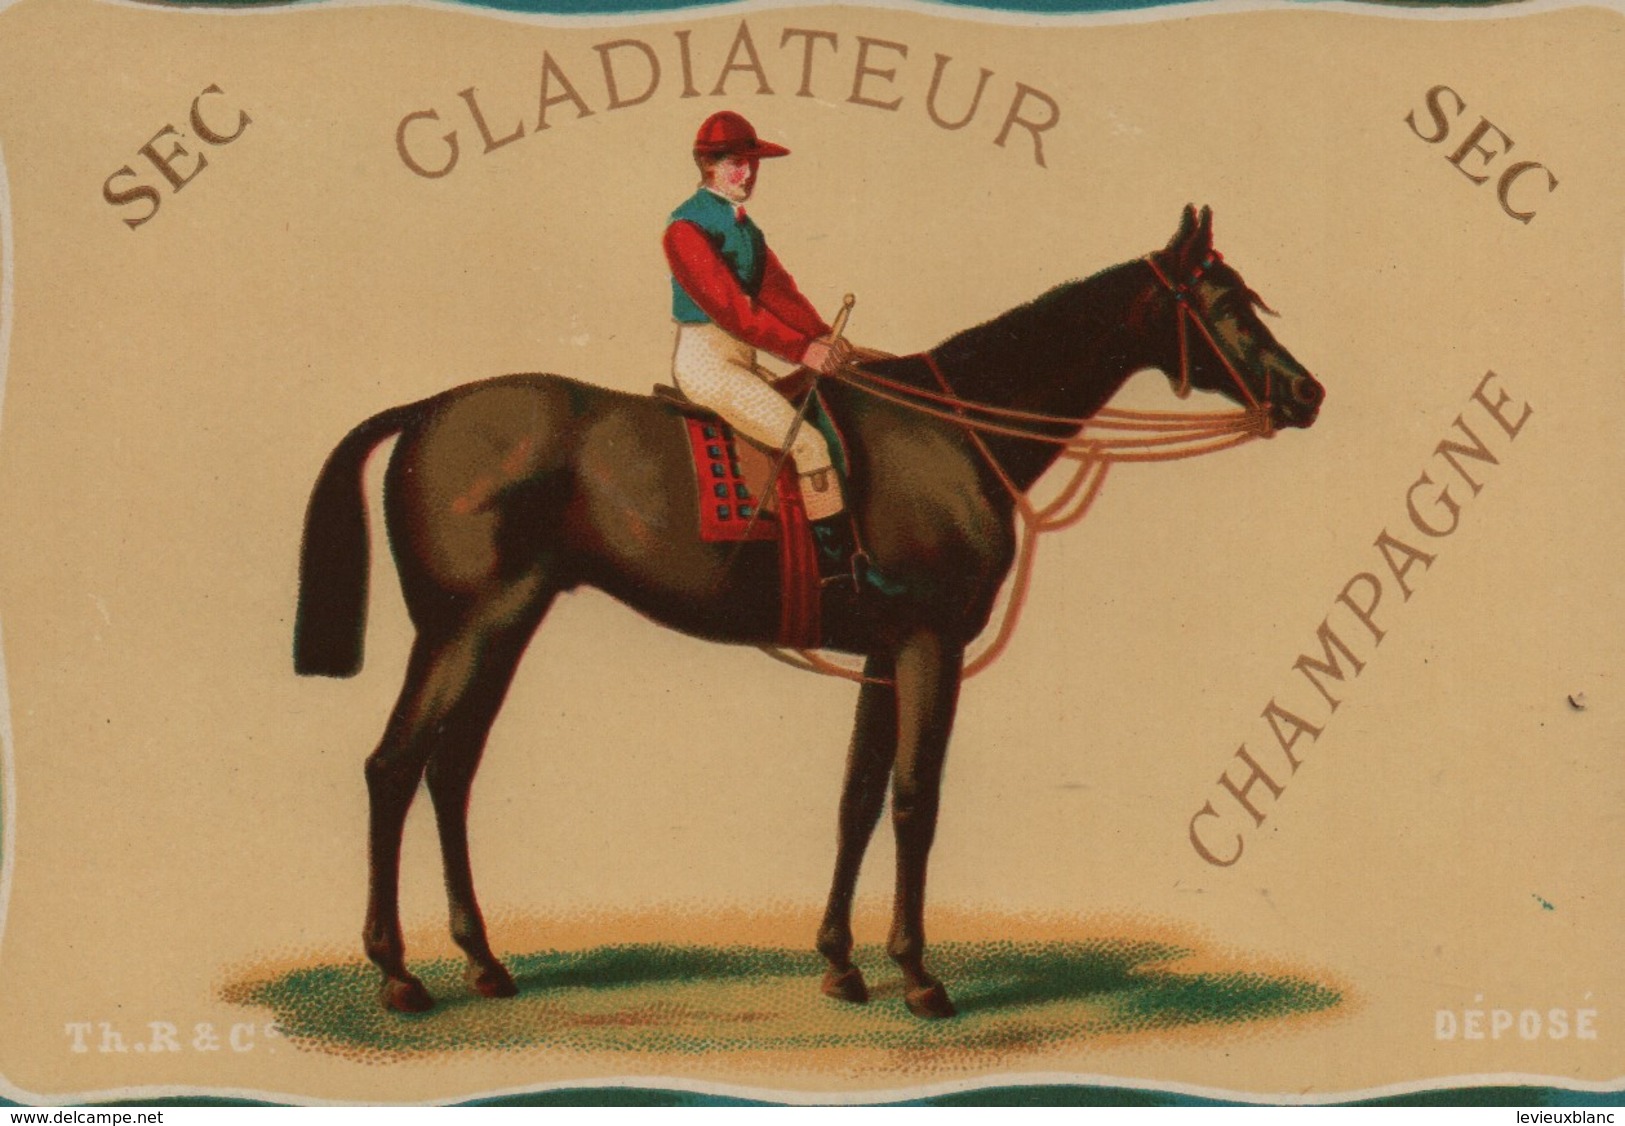 Théophile Roederer & Cie/Maison Fondée  En 1864/ GLADIATEUR/ Champagne Sec/ Equitation-Jockey Vers 1870-75       ETIQ159 - Champagne